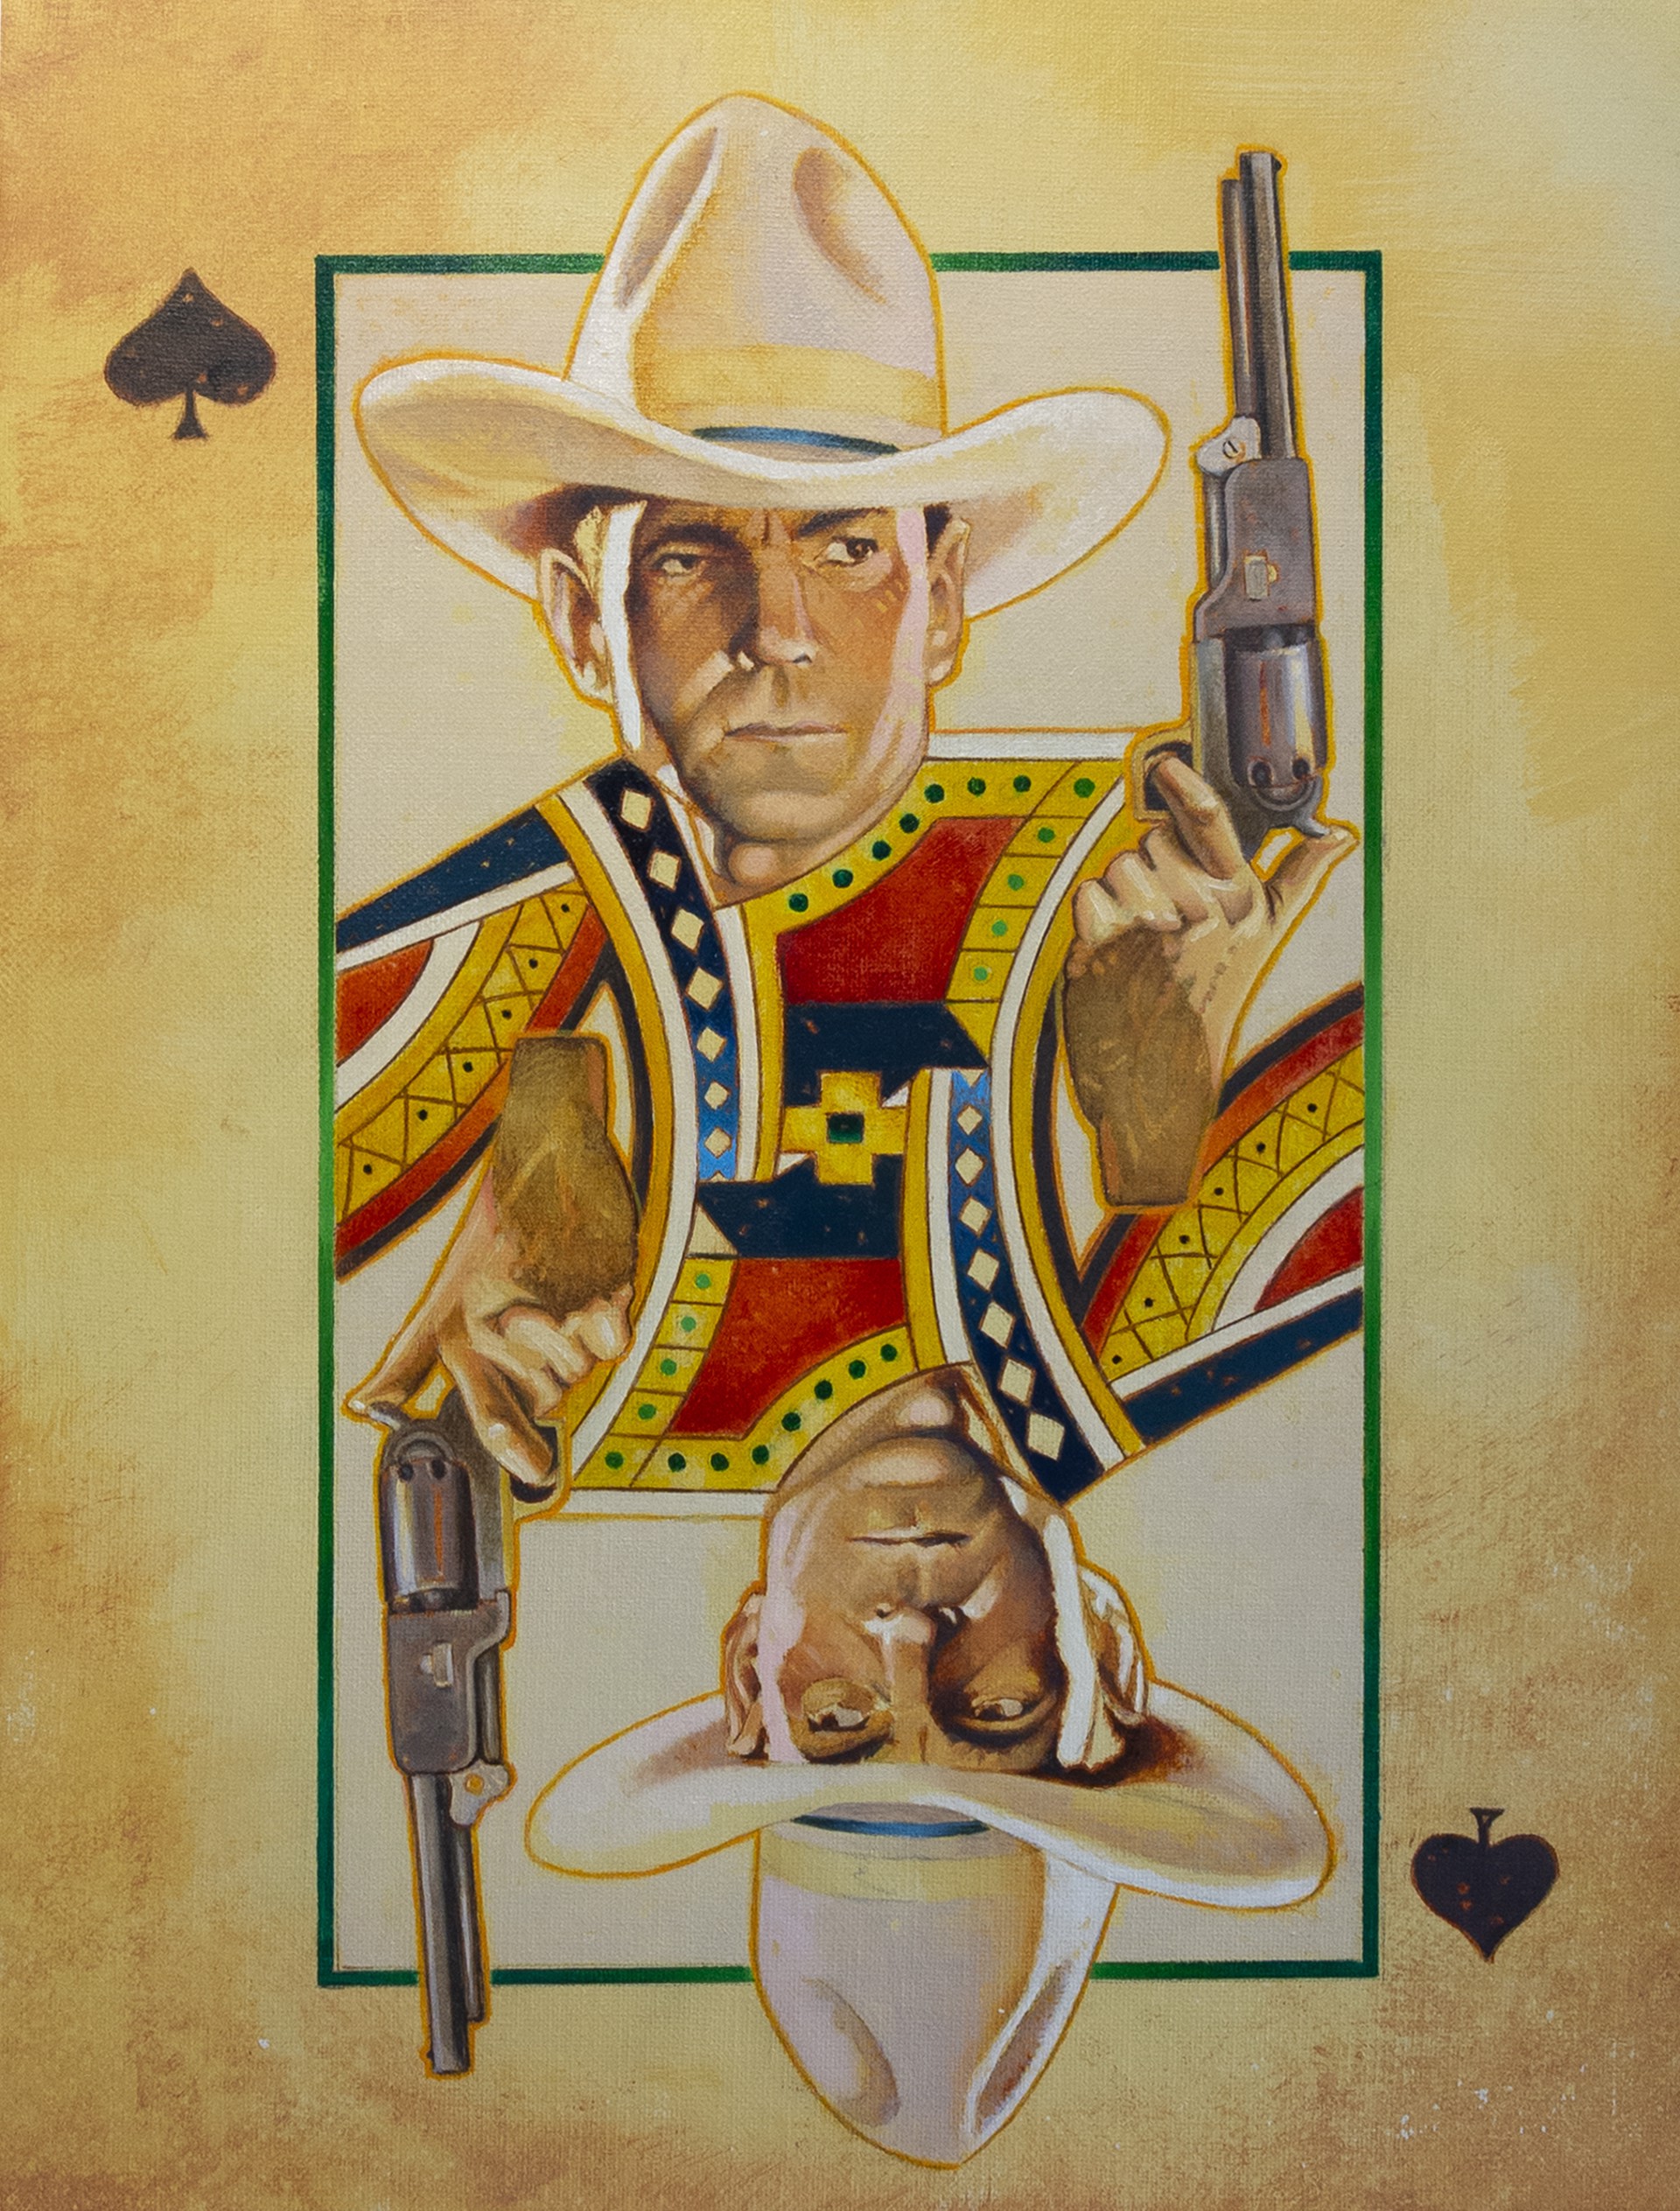 Buck of Spades by David Kammerzell